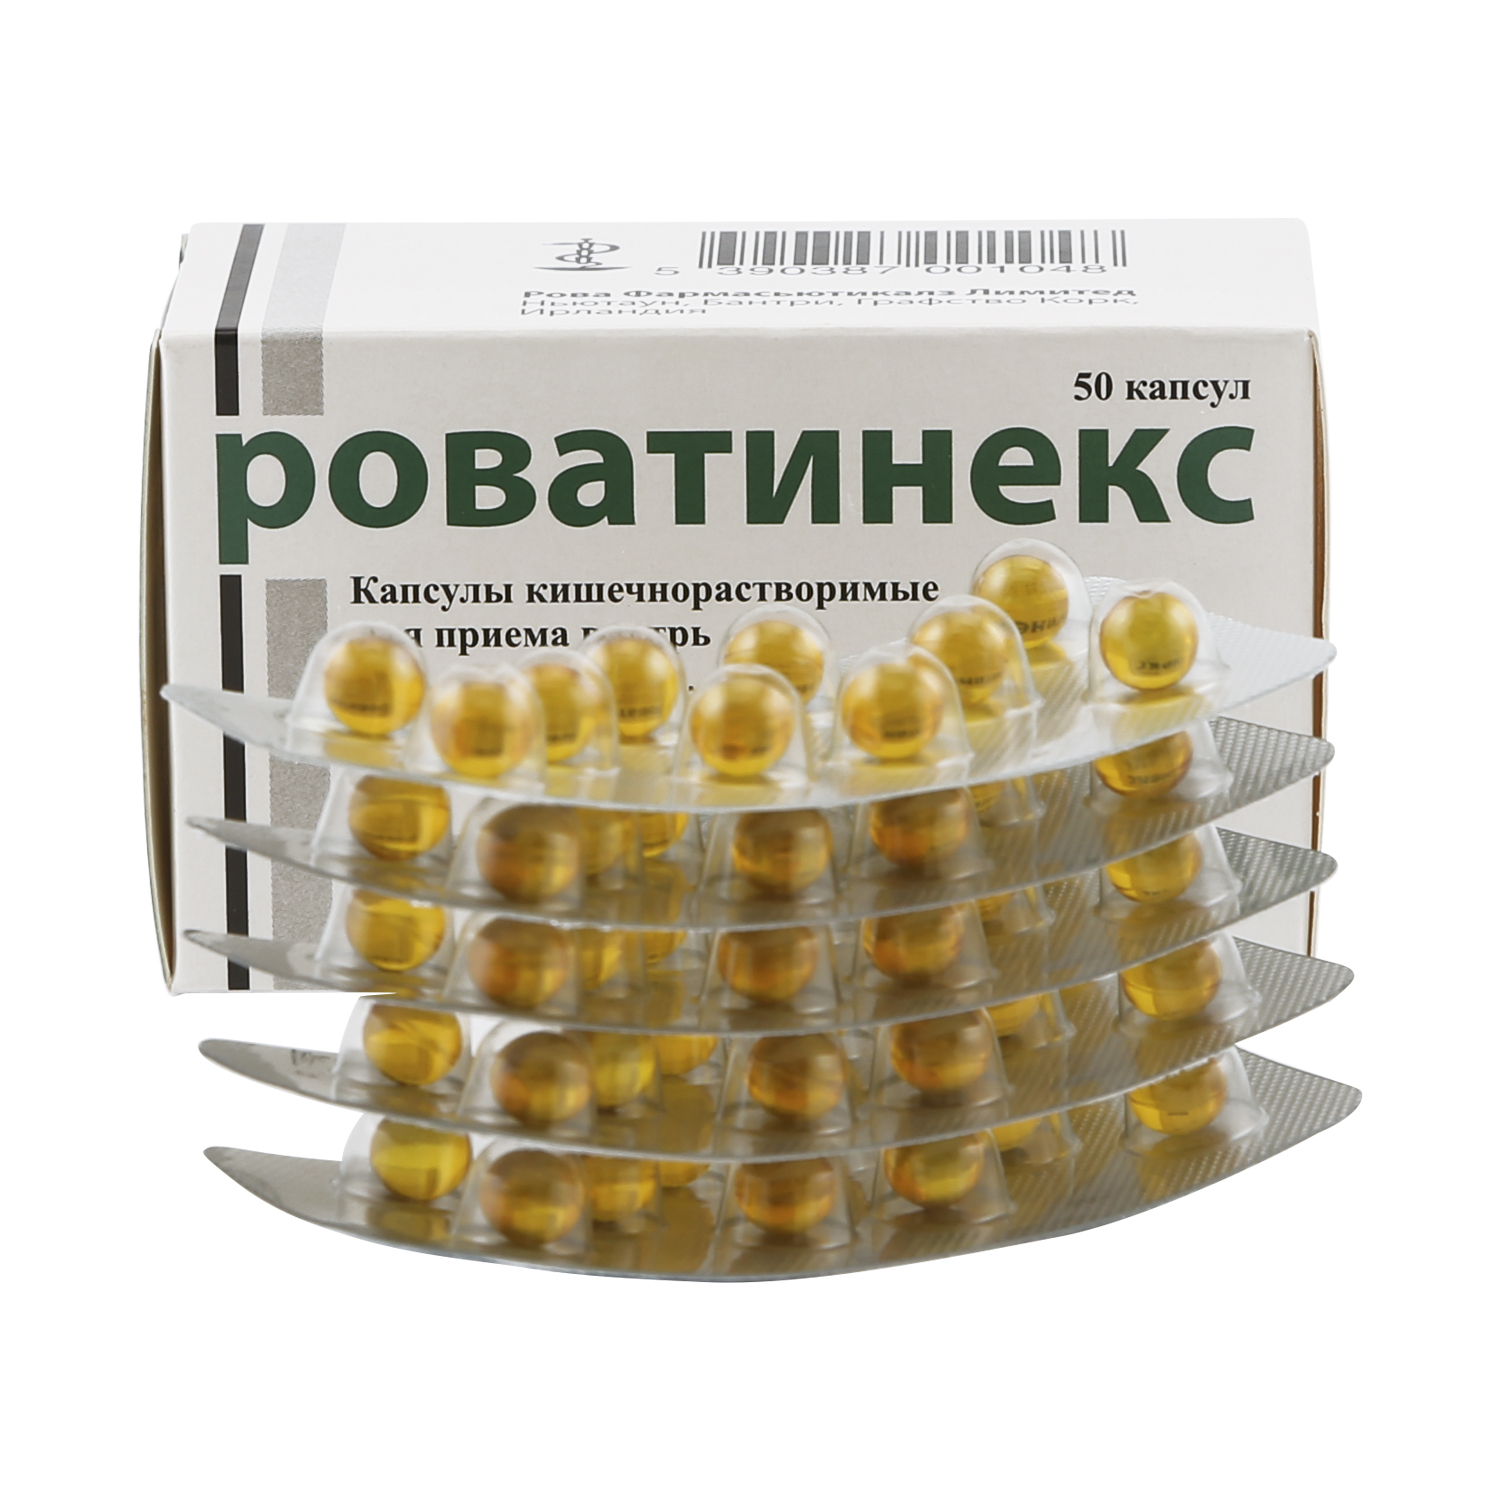 Роватинекс Цена В Аптеках Москвы 100